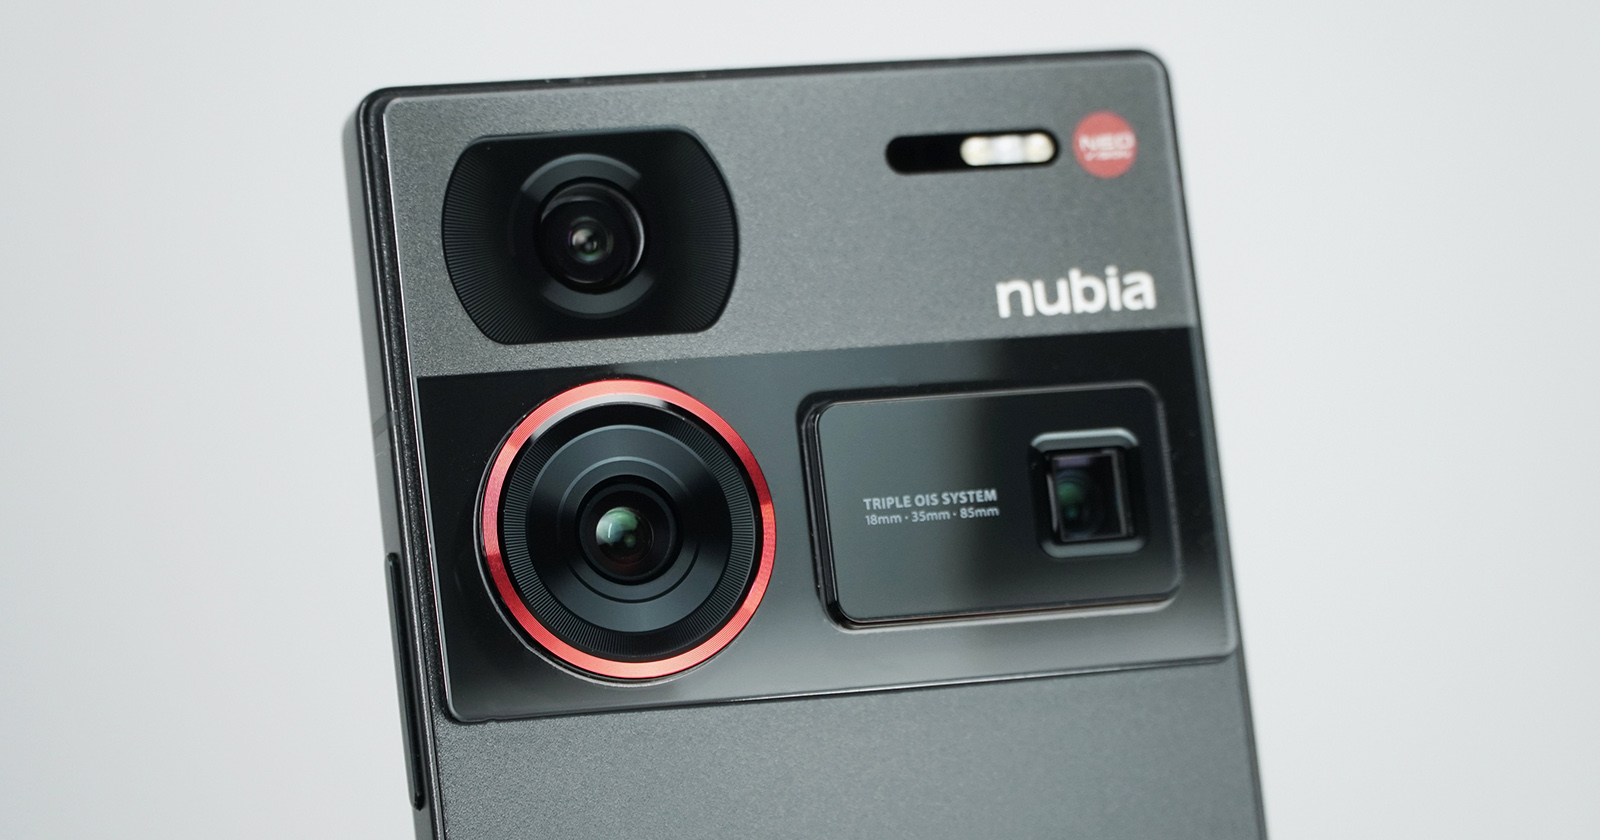 nubia Z60 Ultra - Nubia Store (Global)